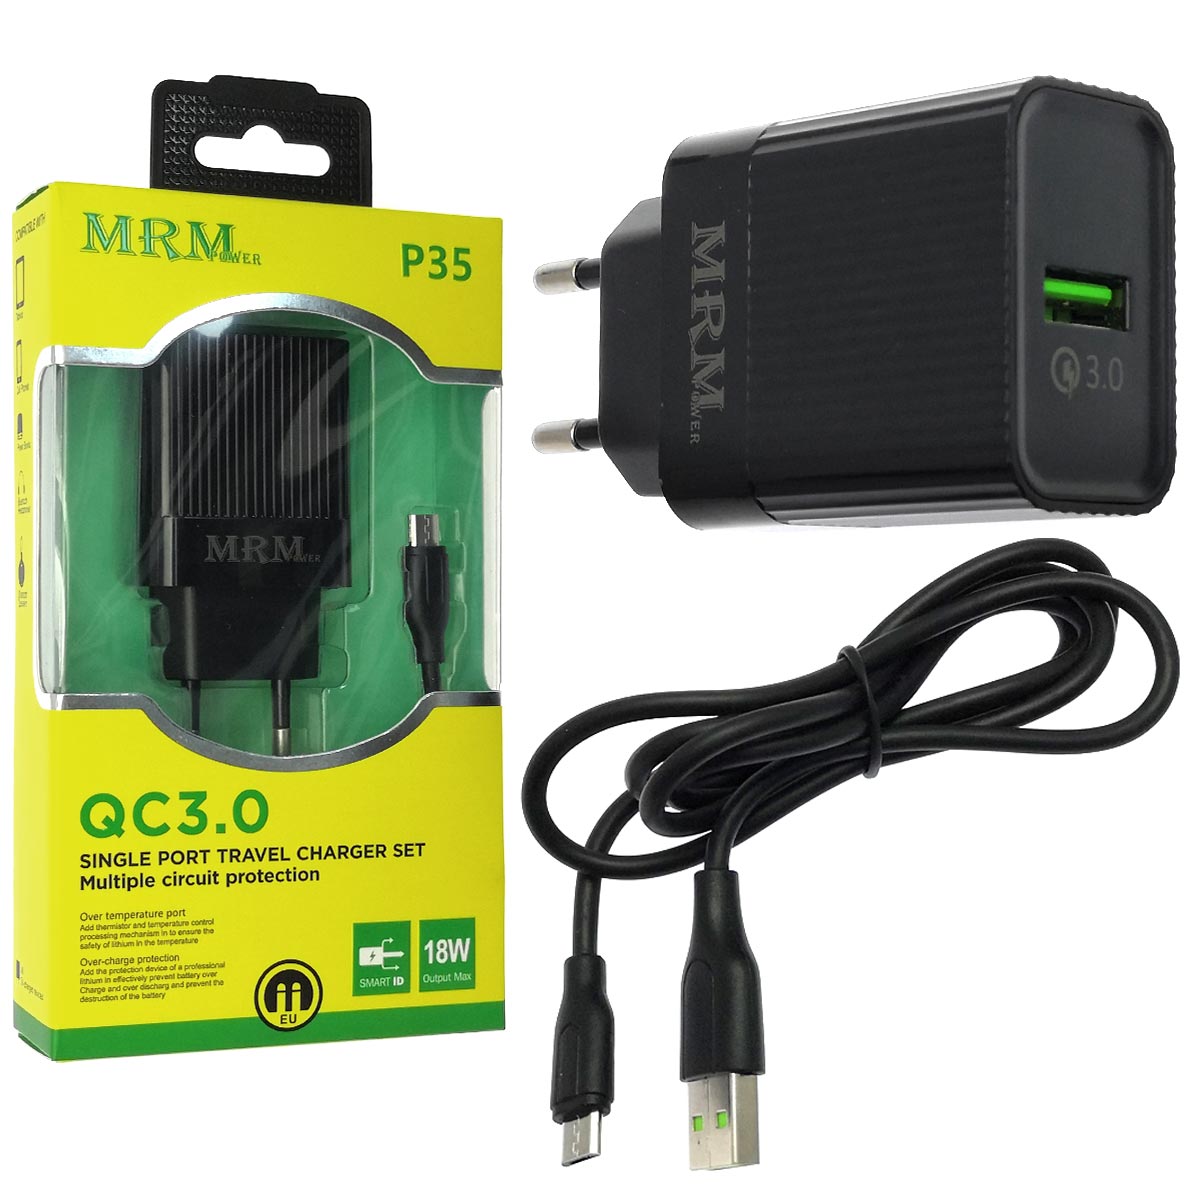 СЗУ (Сетевое зарядное устройство) MRM P35, с кабелем Micro USB ,1 USB порт, QC 3.0, длина 1 метр, цвет черный